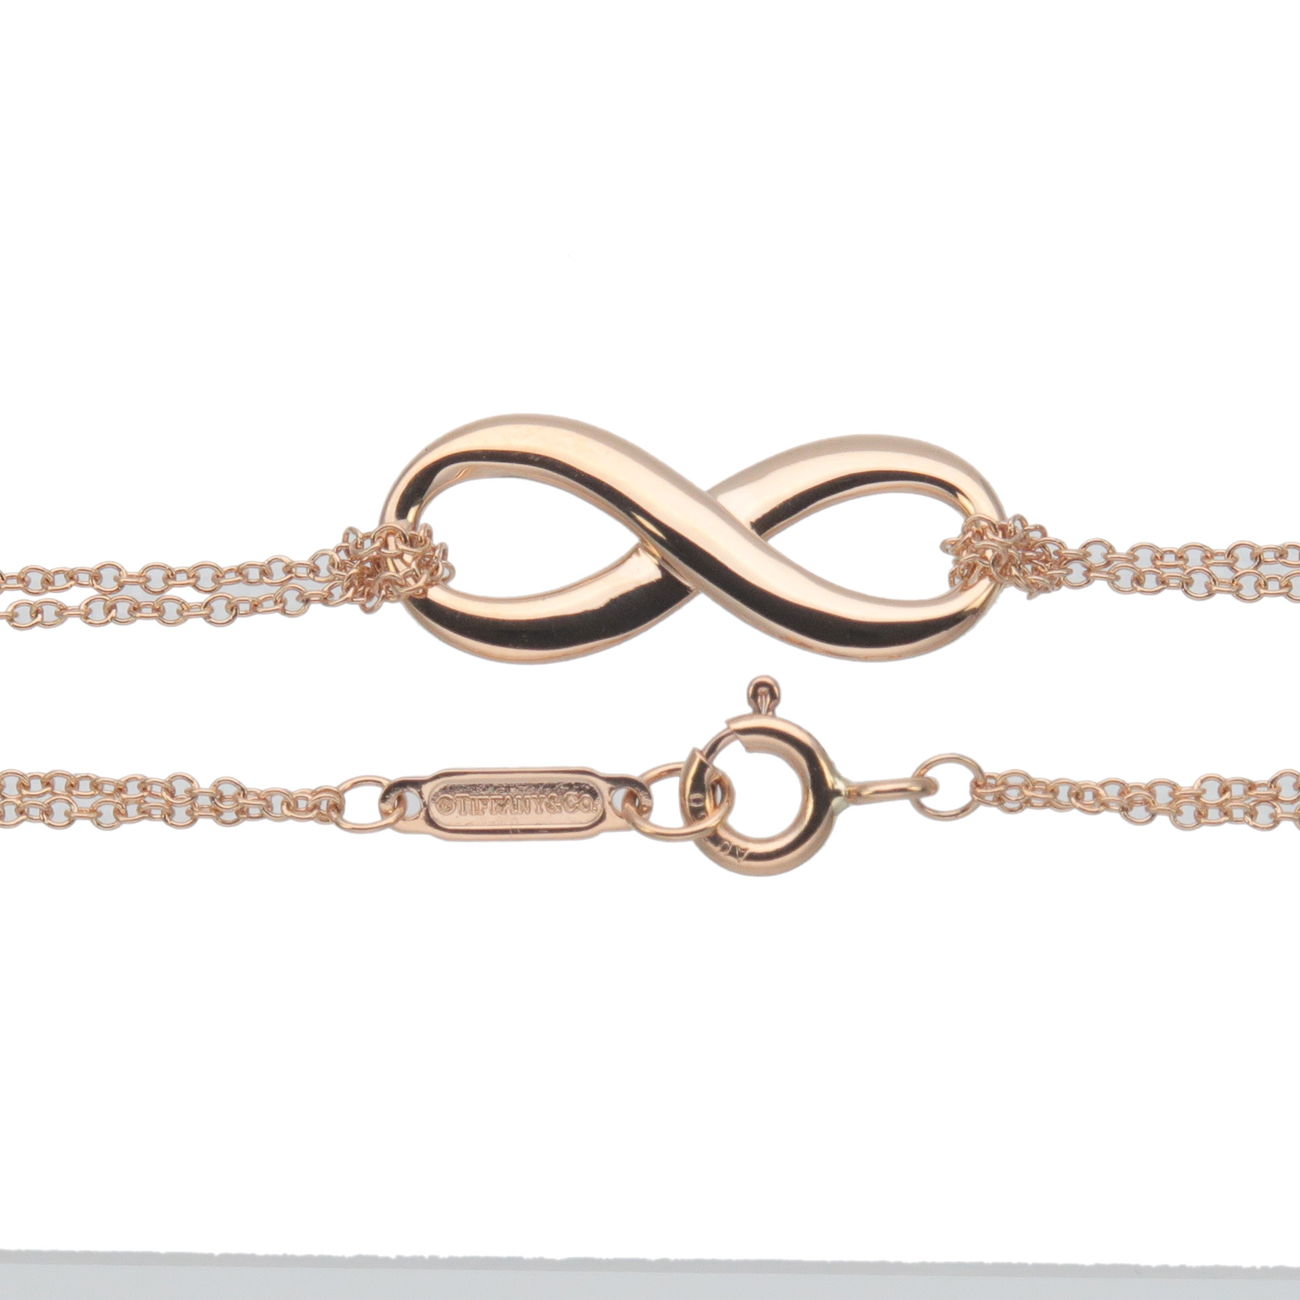 Tiffany&Co. Tiffany Infinity Bracelet K18PG 750PG Rose Gold